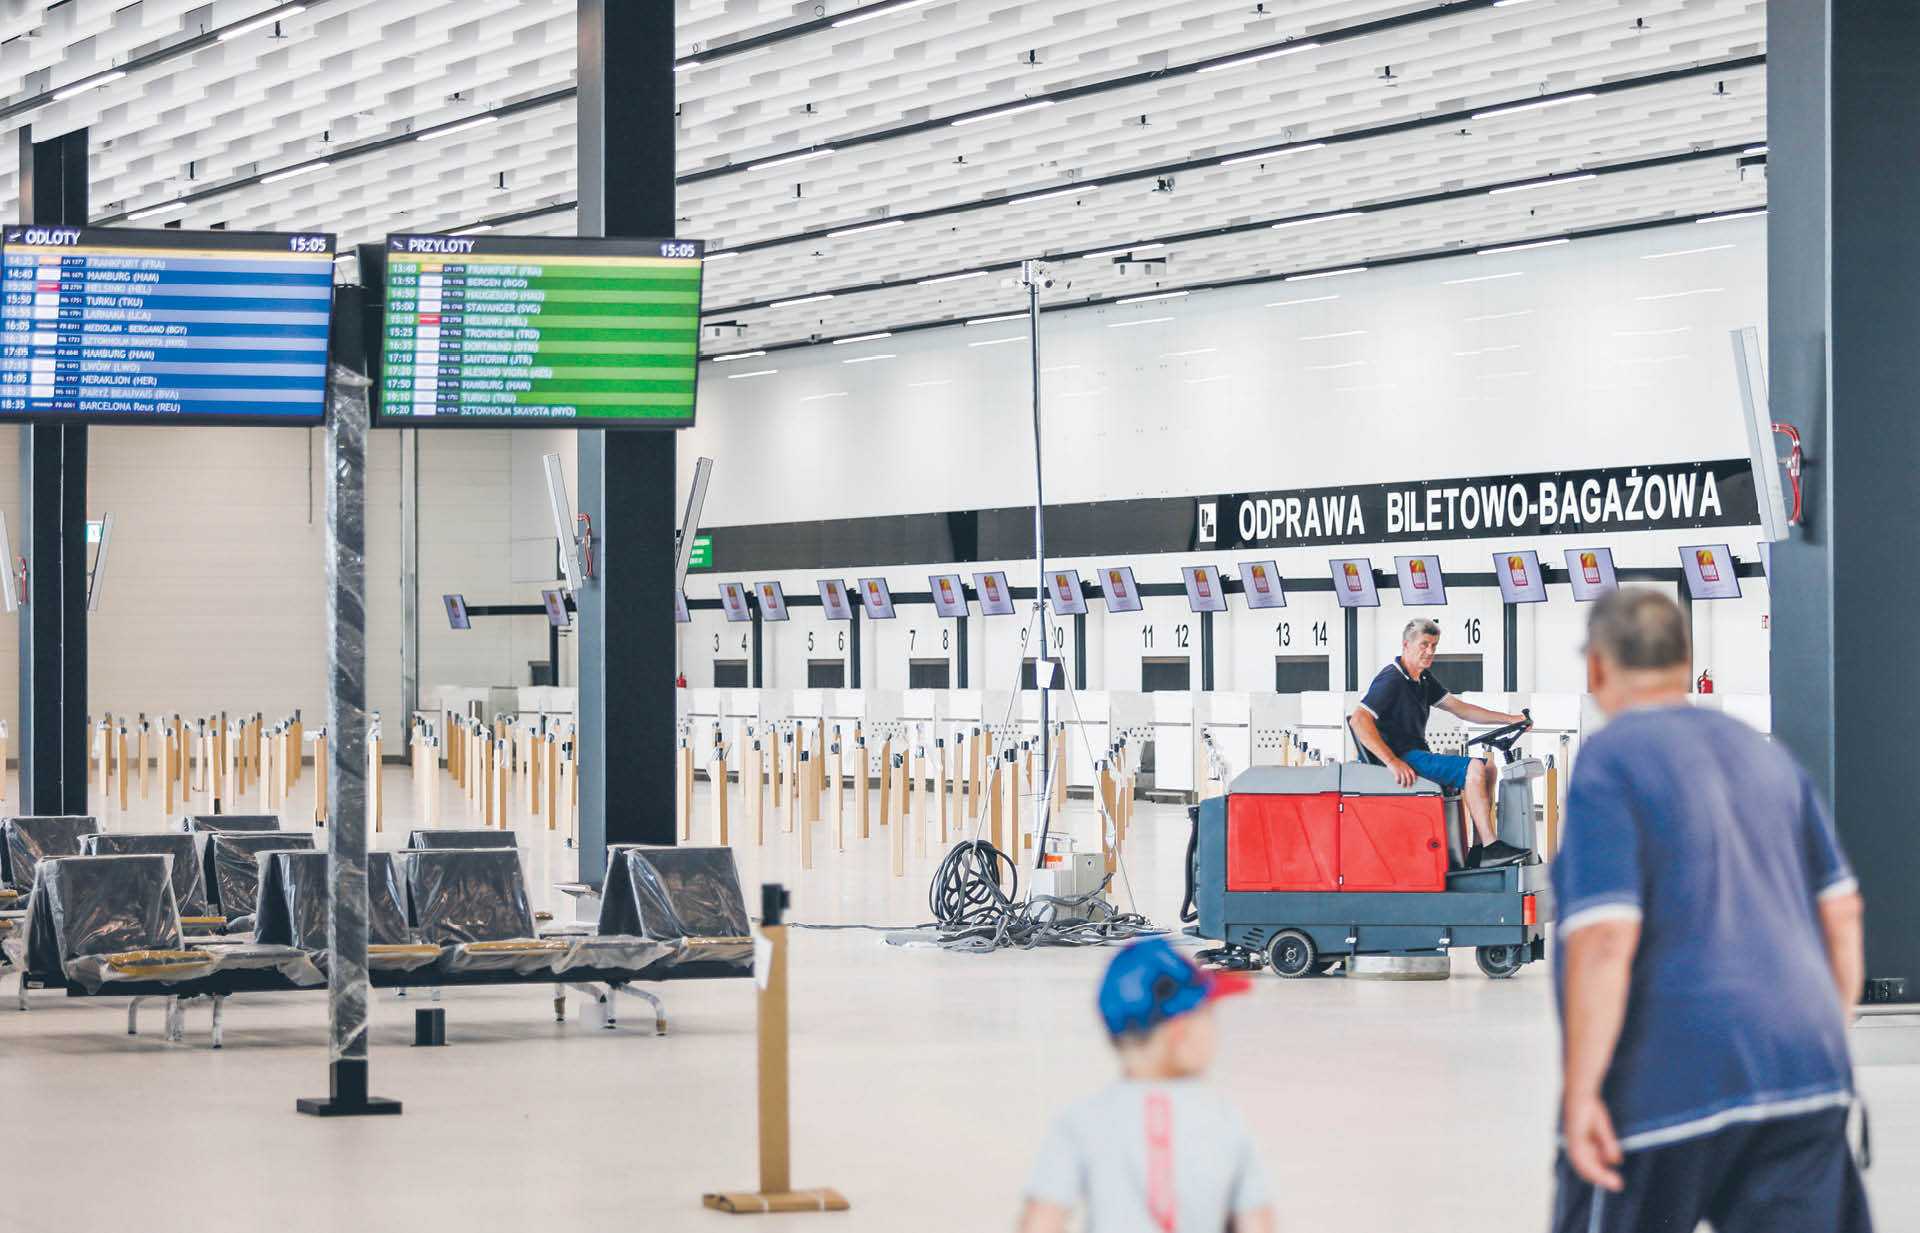 Sukces lotniska na południu Mazowsza będzie zależeć od szybkiego powrotu popytu na latanie – twierdzą eksperci